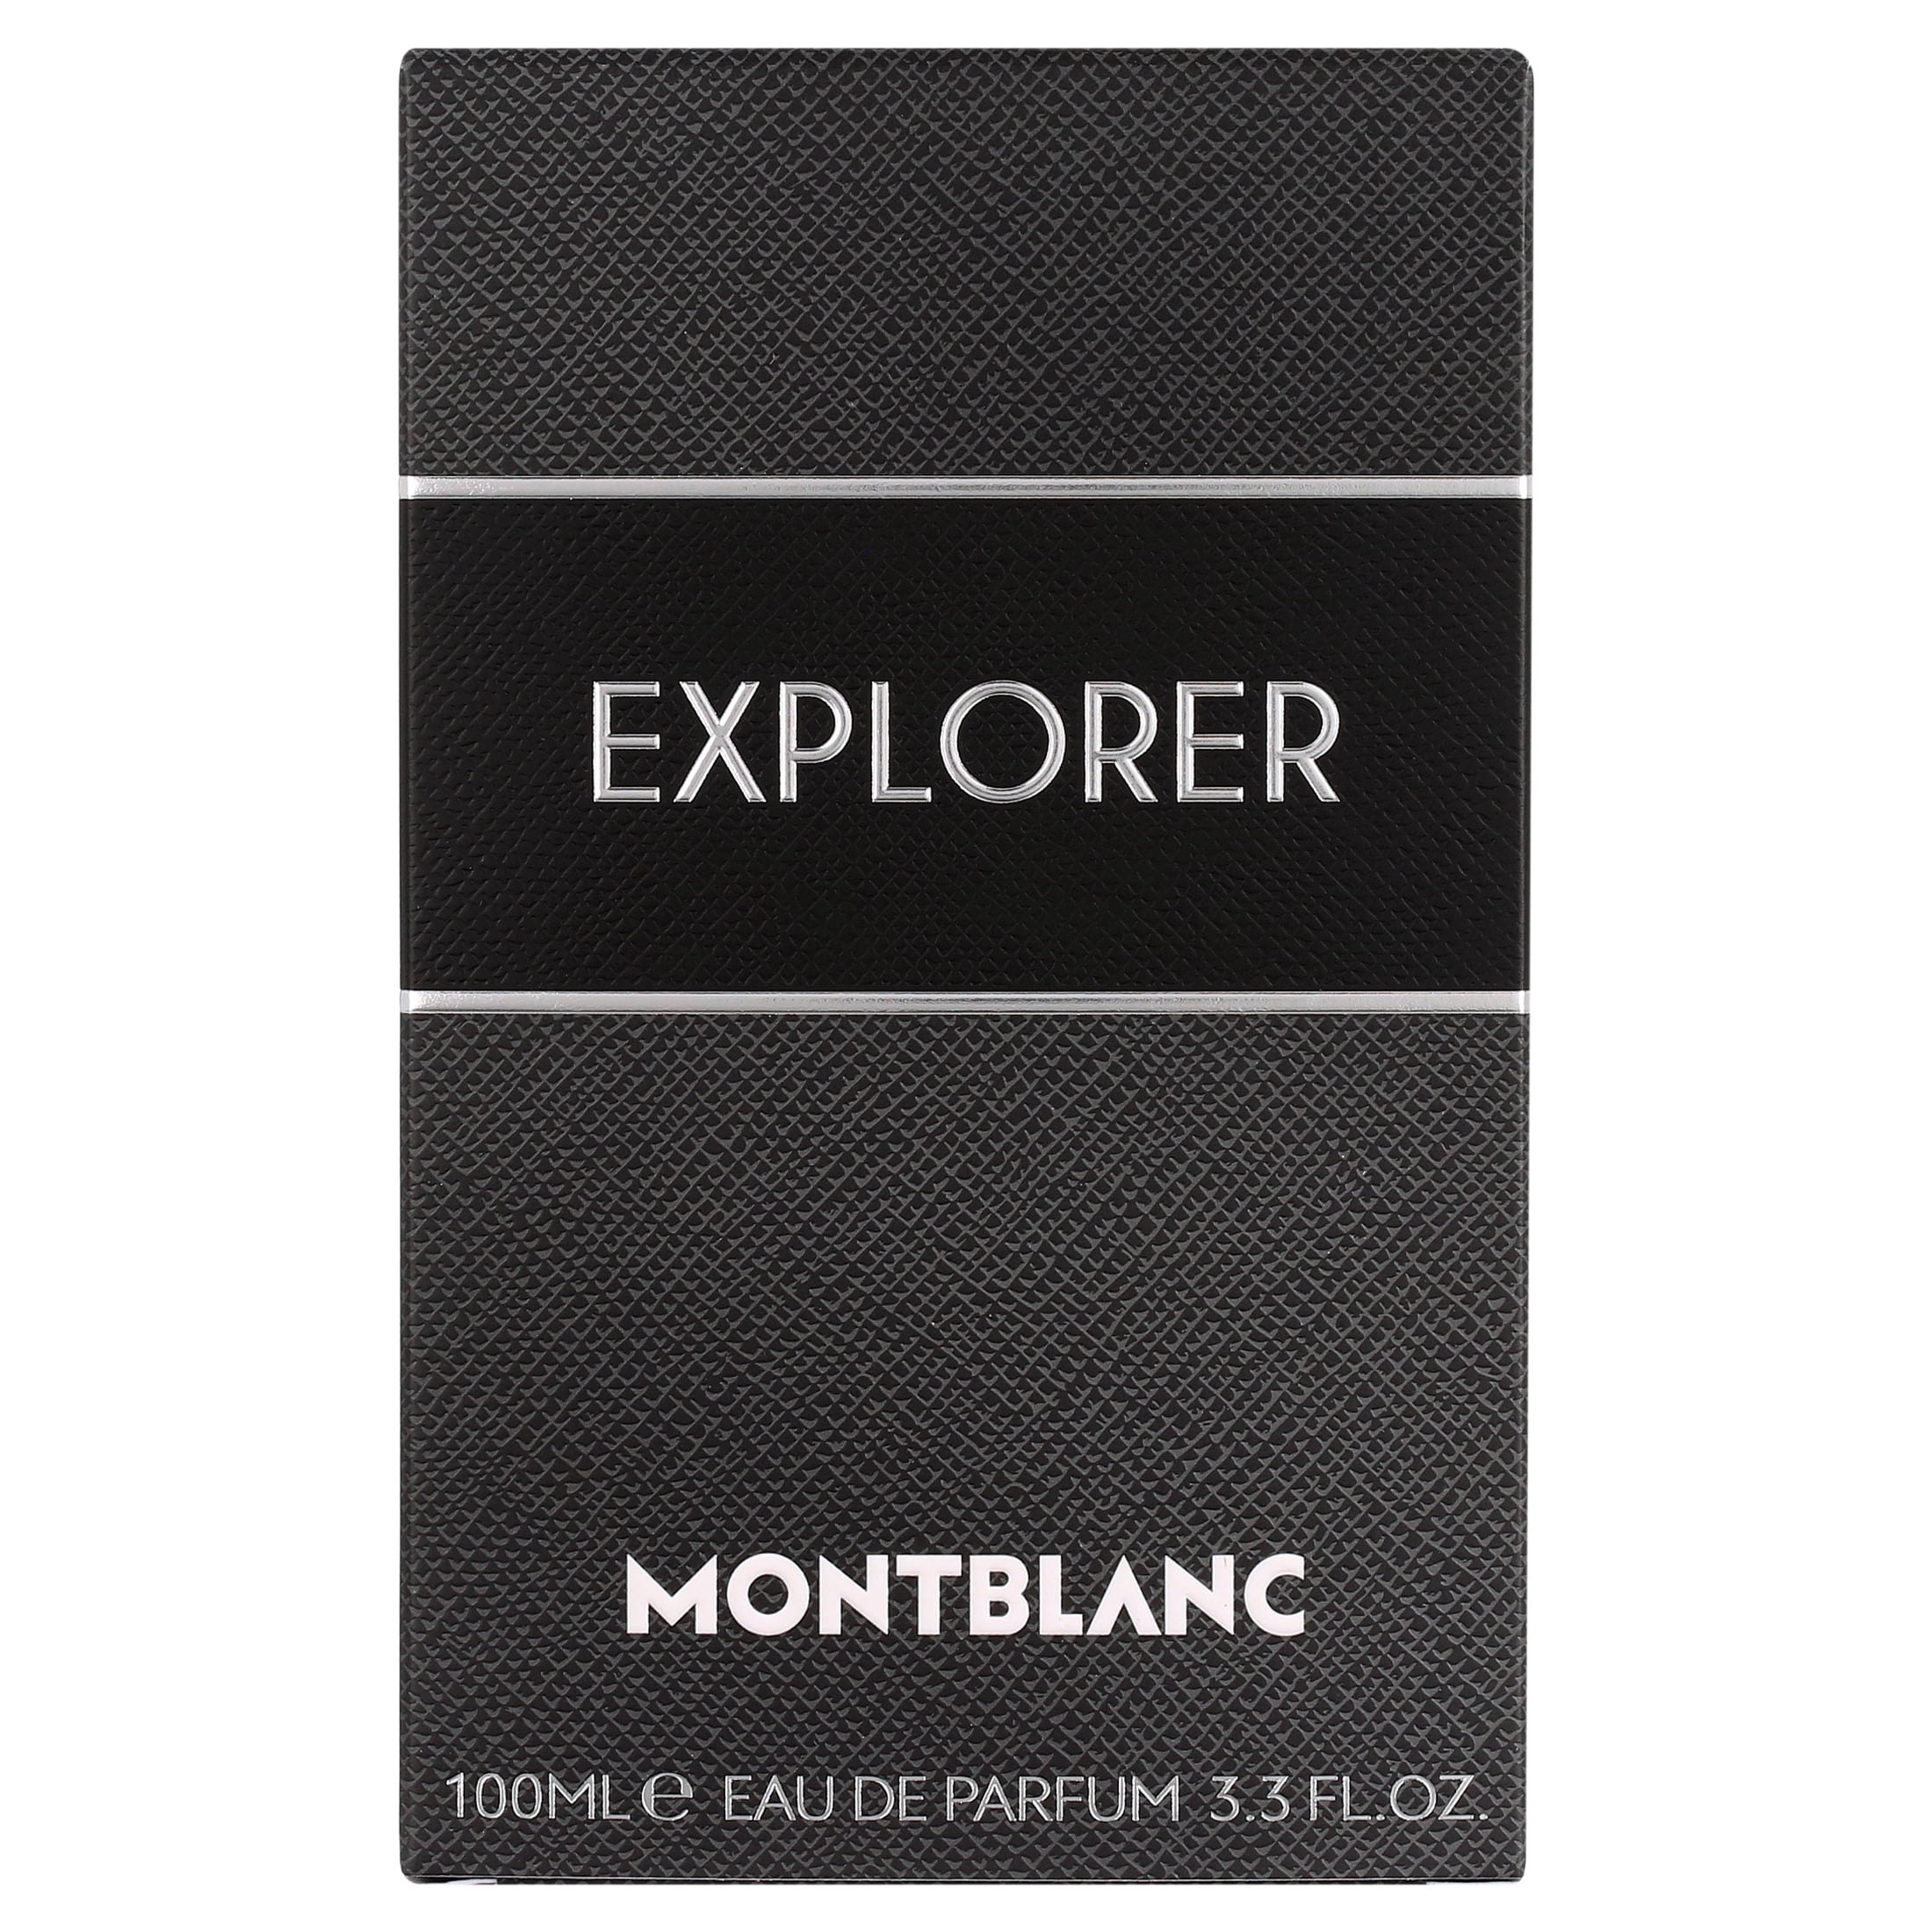 Mont Blanc Montblanc Explorer Eau de Parfum Spray 2 oz